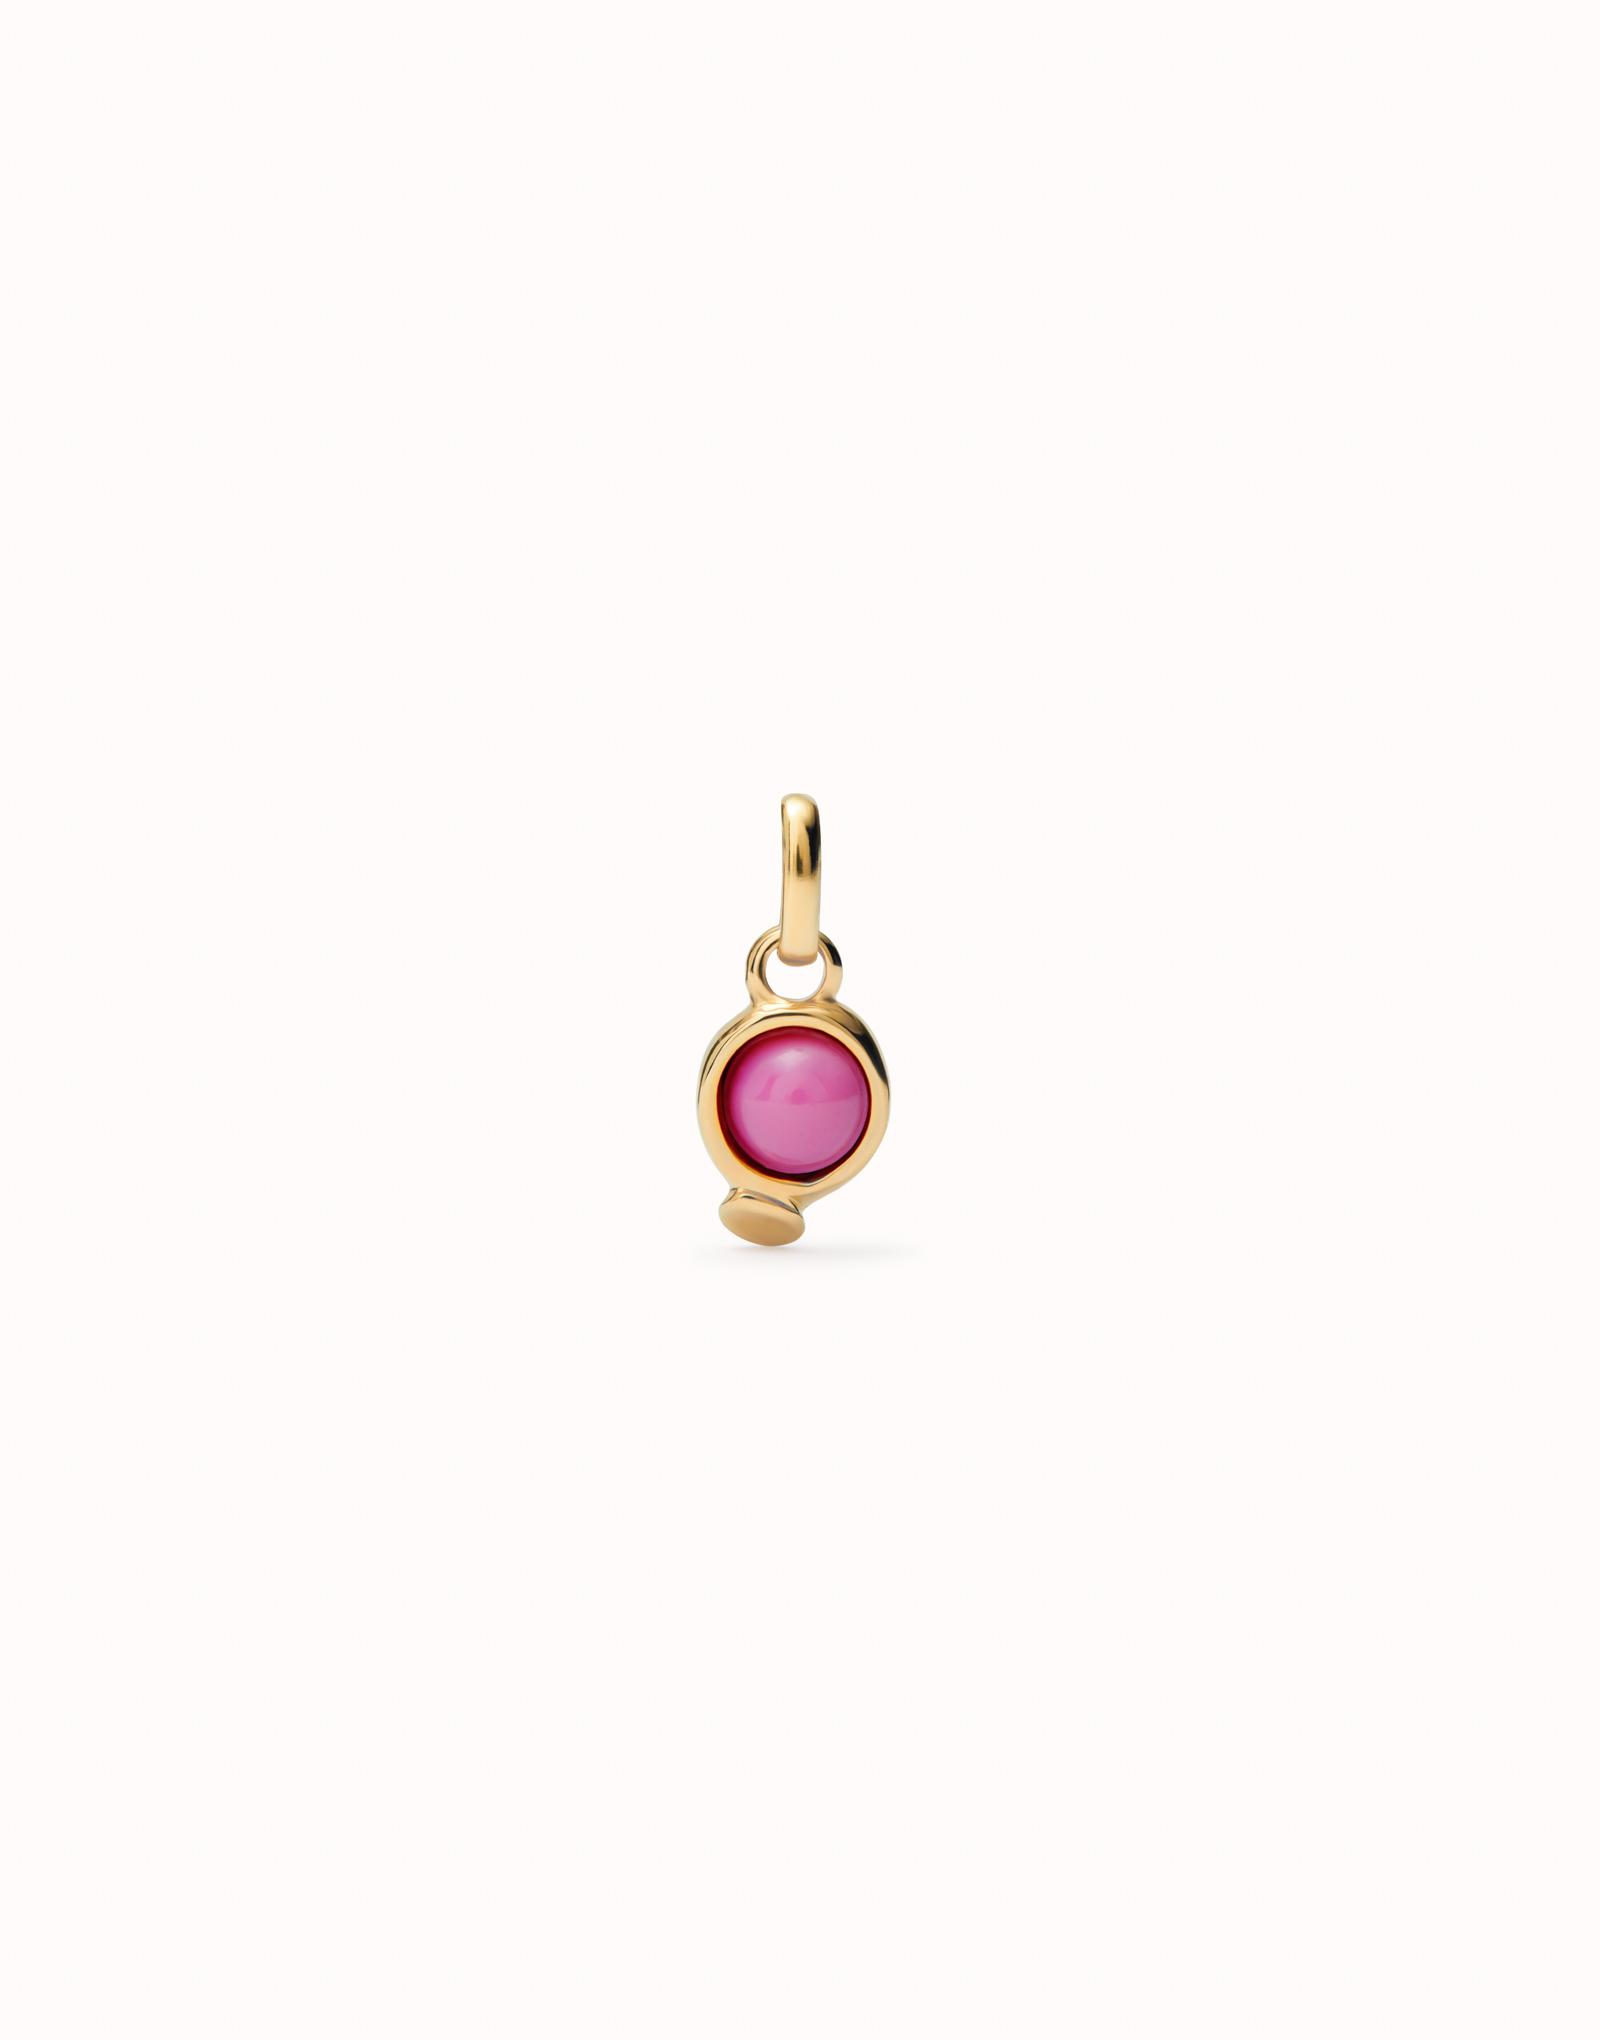 Charm  bañado en oro 18k con piedra rosa., Dorado, large image number null